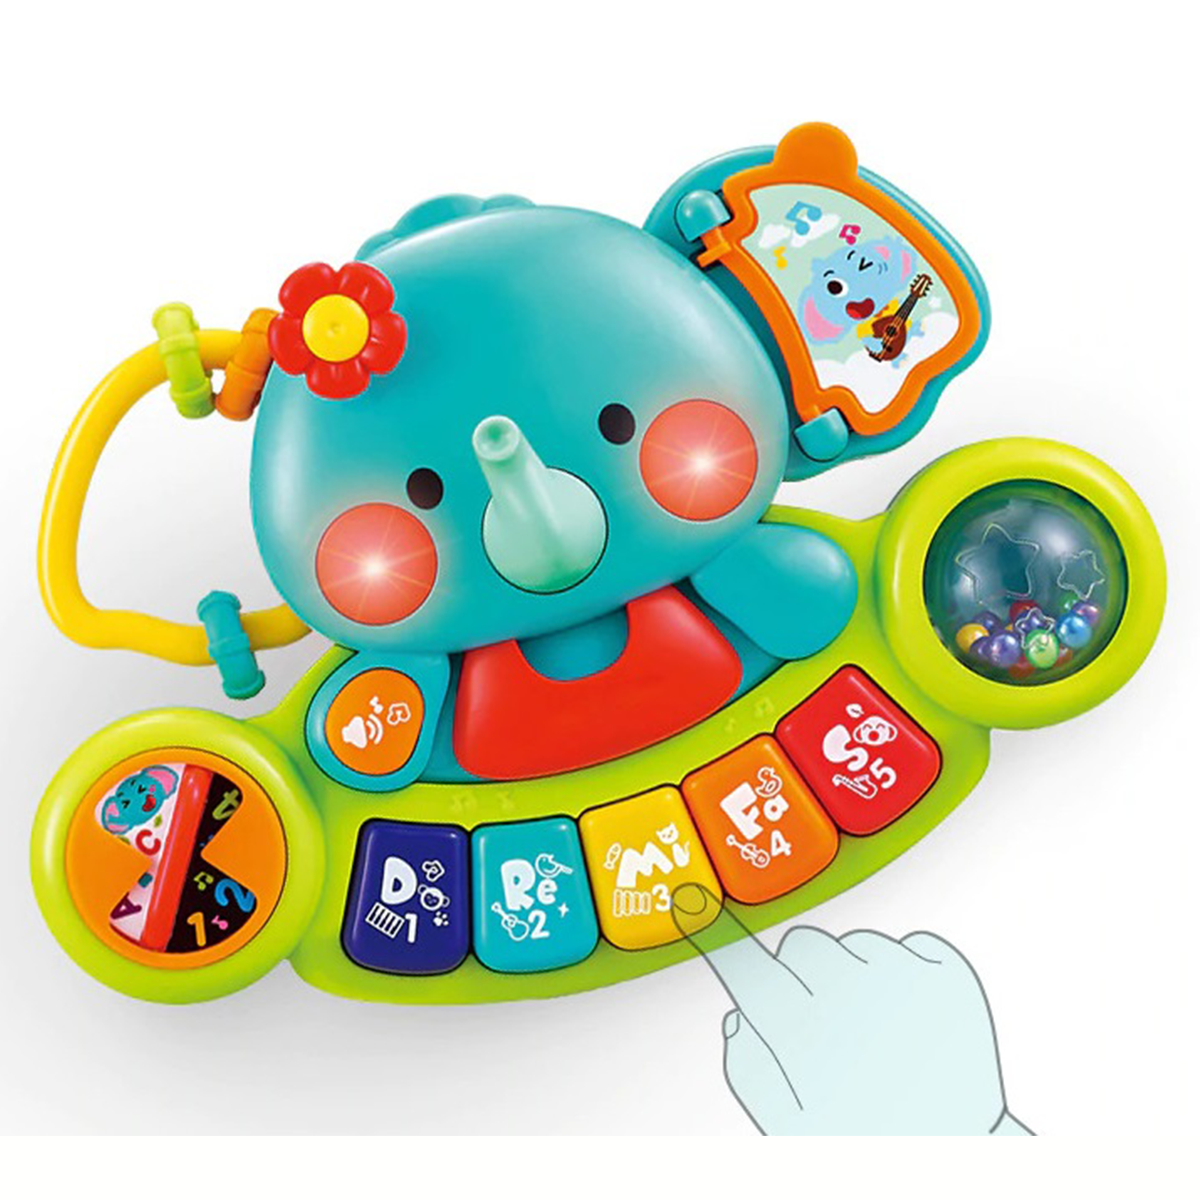 Hola - Baby Toys Elephant Keyboard